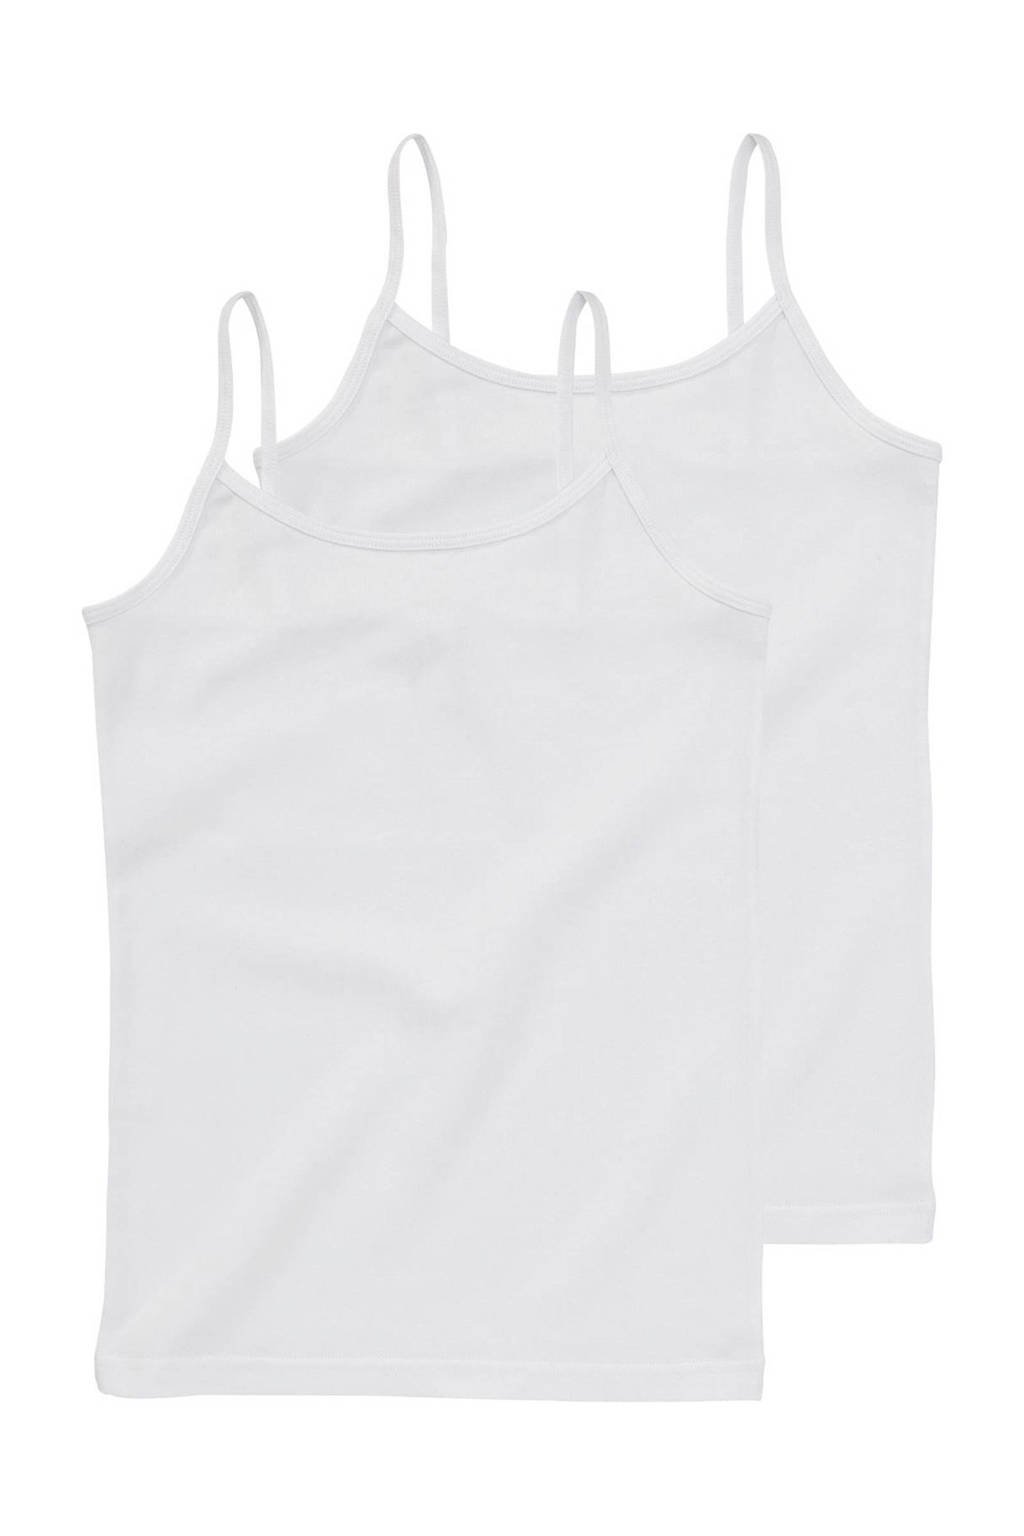 HEMA hemd - set van 2, Wit